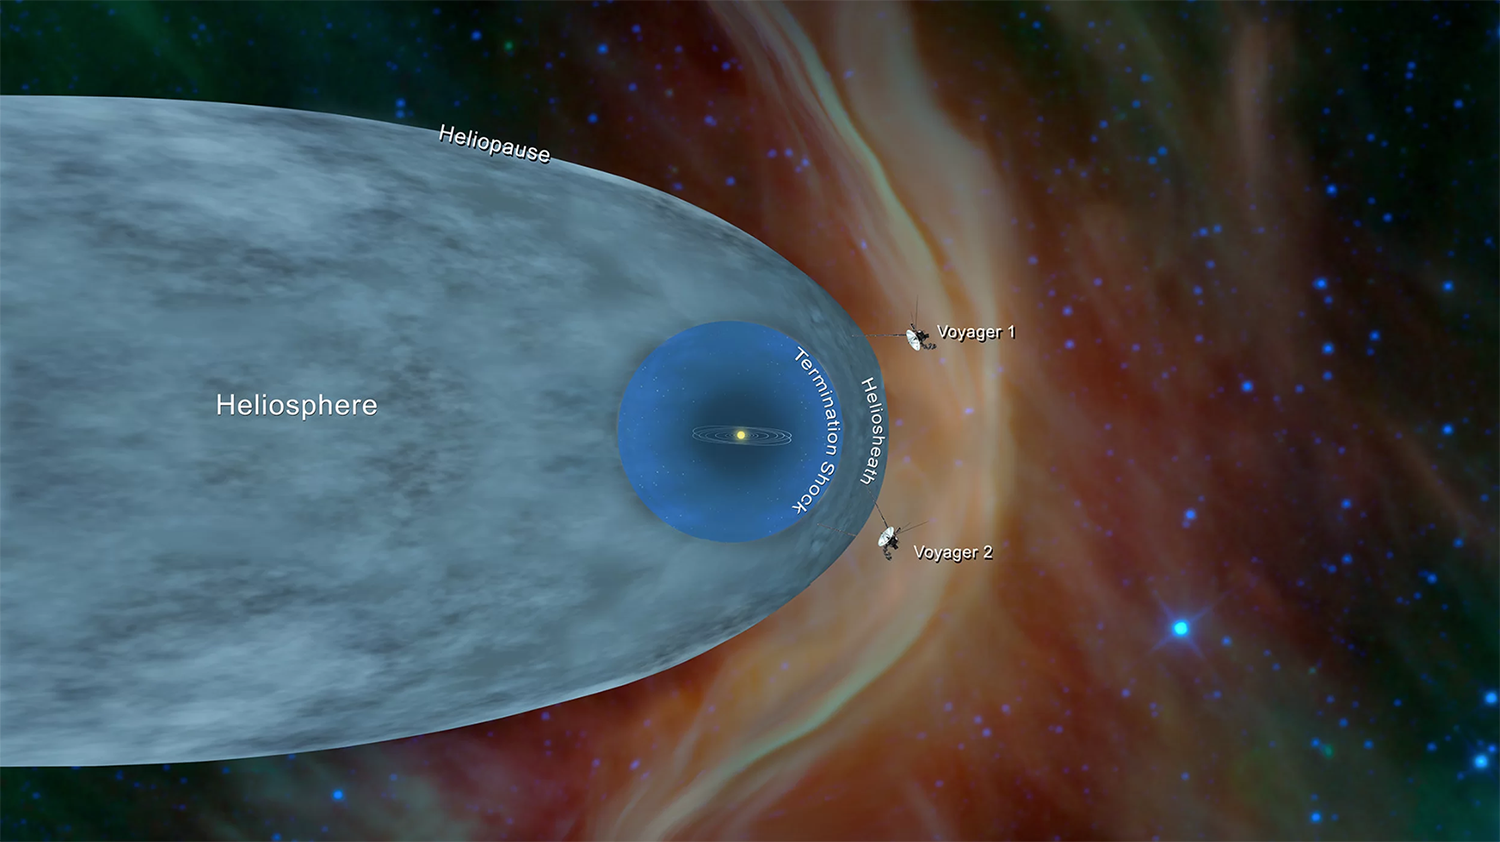 Confirmado. La sonda Voyager 2 de la NASA alcanza espacio interestelar